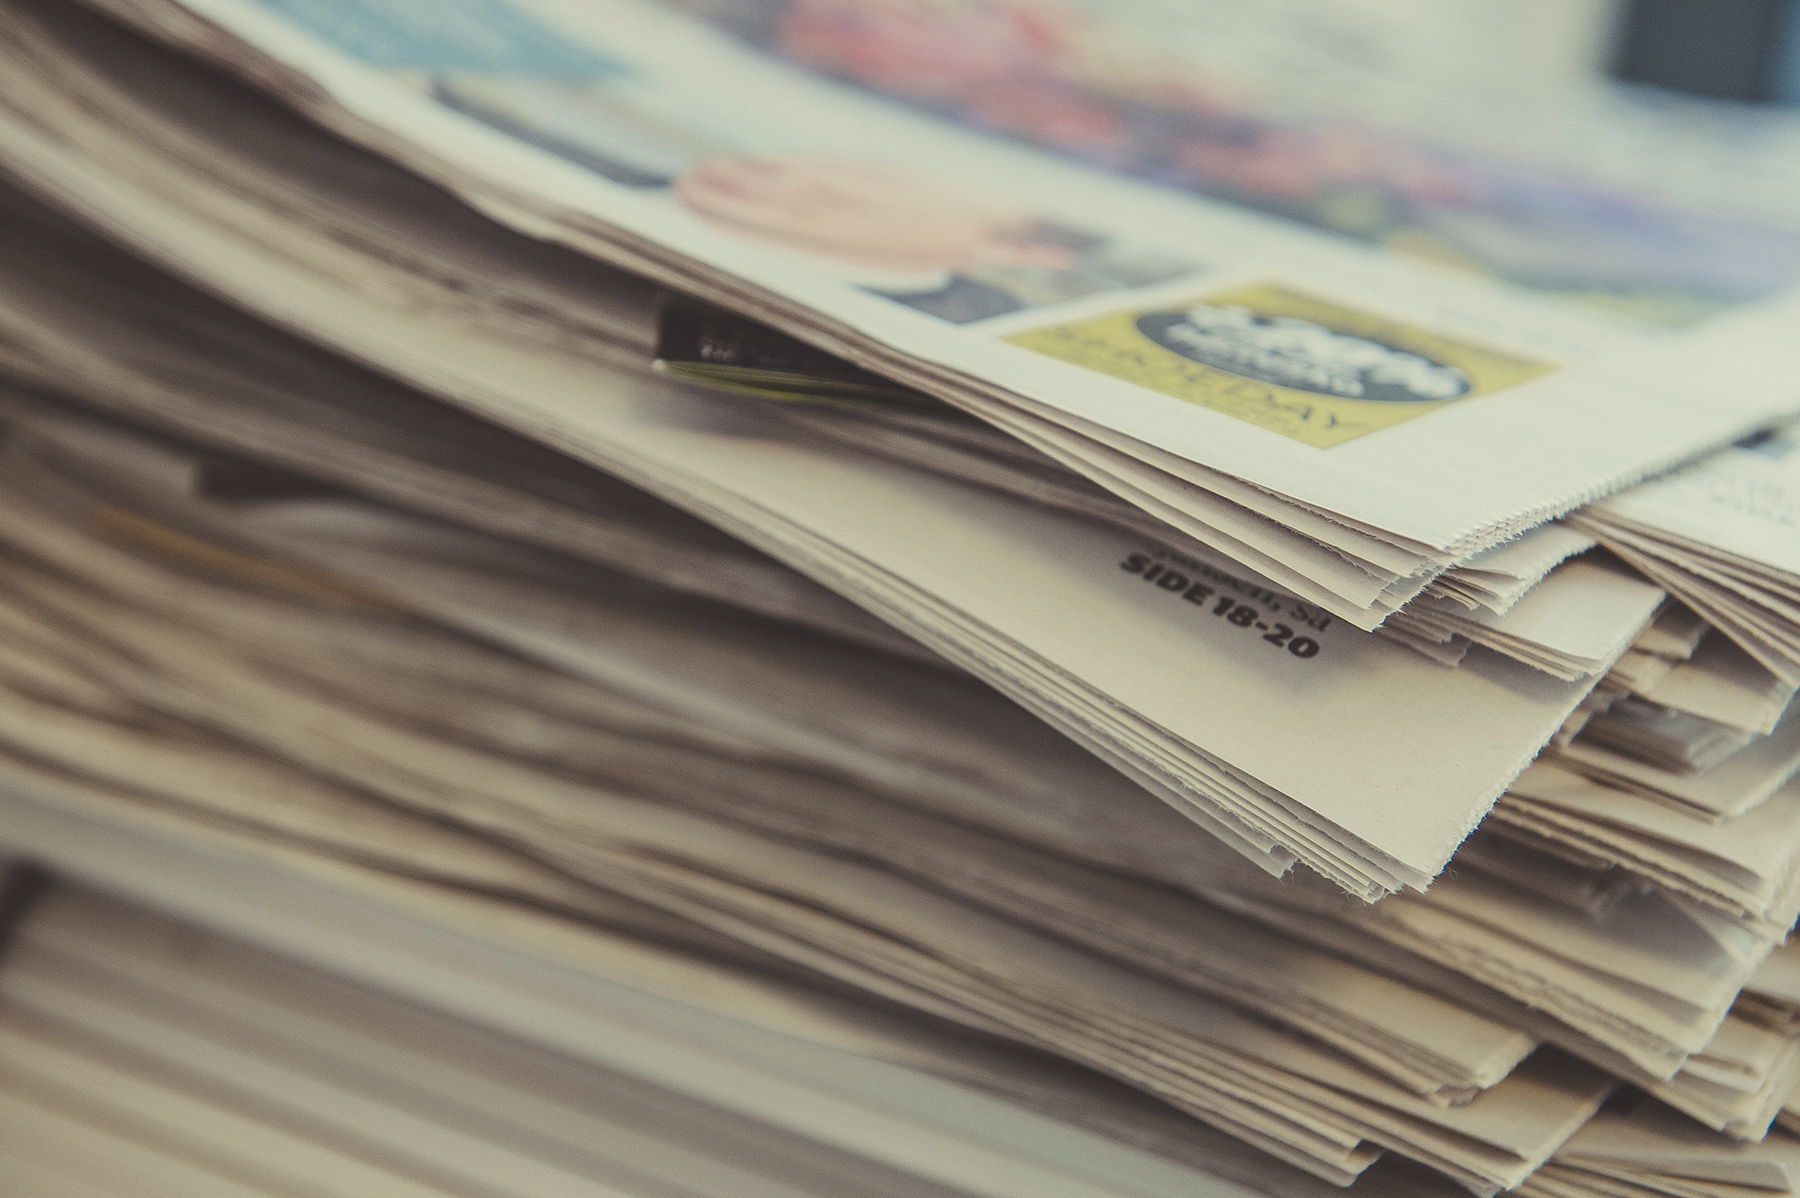 158 aviser får til sammen 313 millioner kroner i produksjonstilskudd i 2018. Klassekampen, Vårt Land, Dagsavisen og Bergensavisen mottar mest. Foto: Medietilsynet